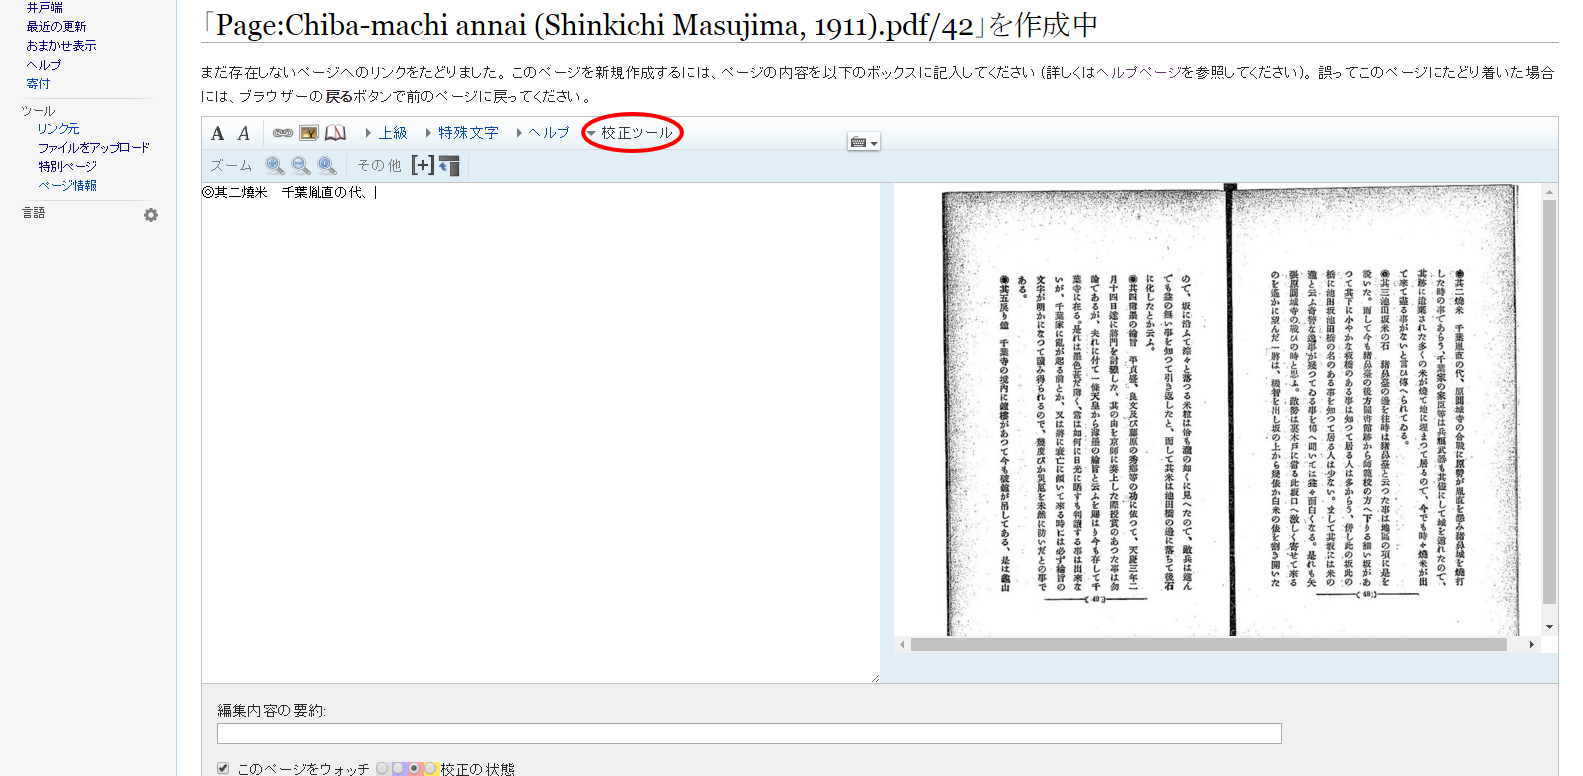 「Page Chiba machi annai  Shinkichi Masujima  1911 .pdf 42」を作成中   Wikisource.png